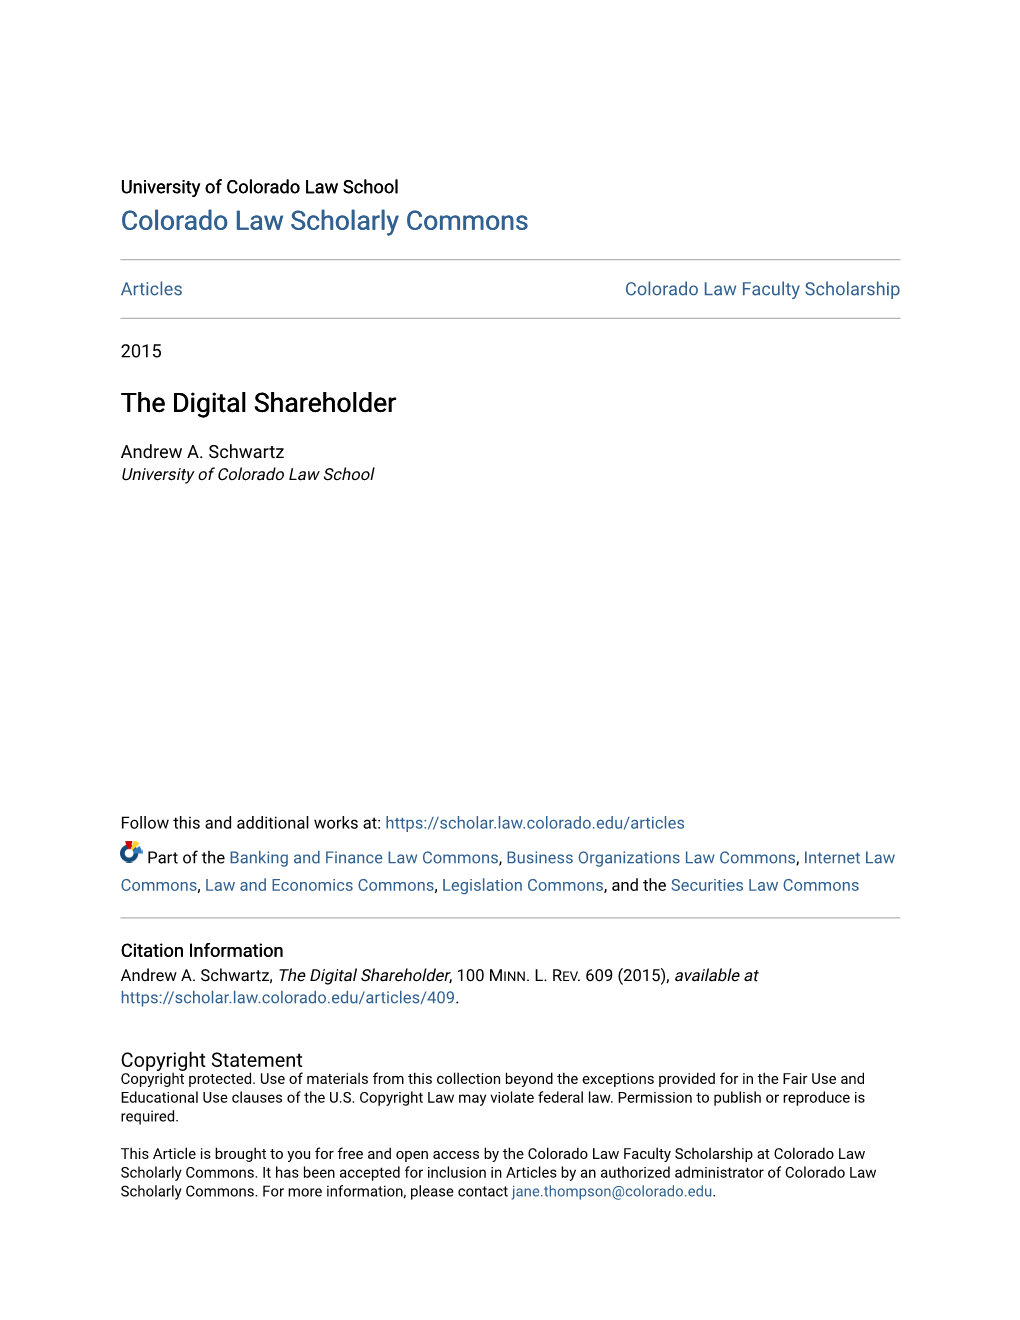 The Digital Shareholder